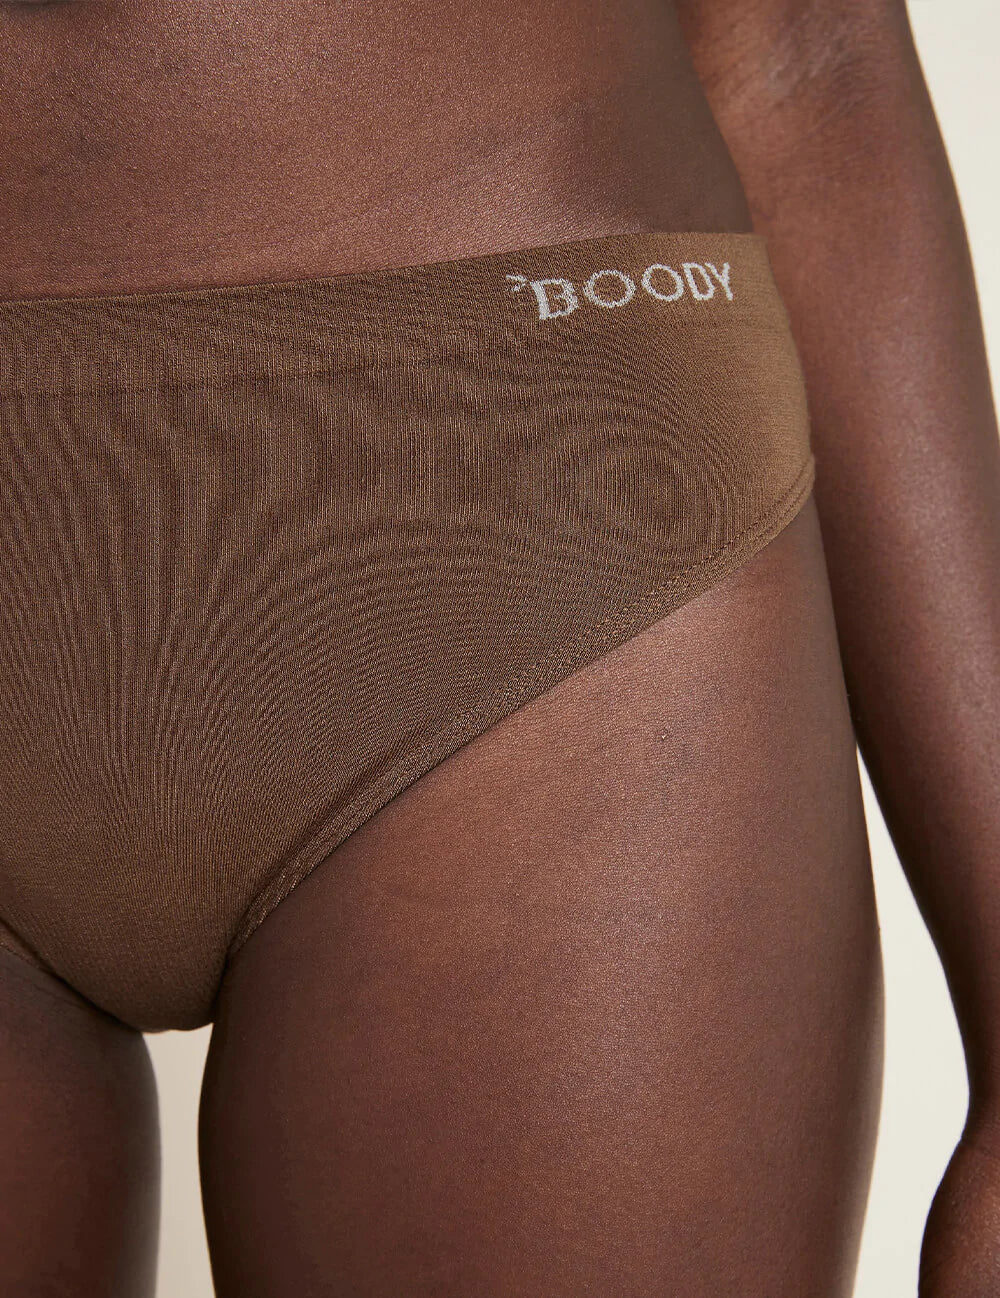 Boody Bamboo Underwear - Classic Bikini